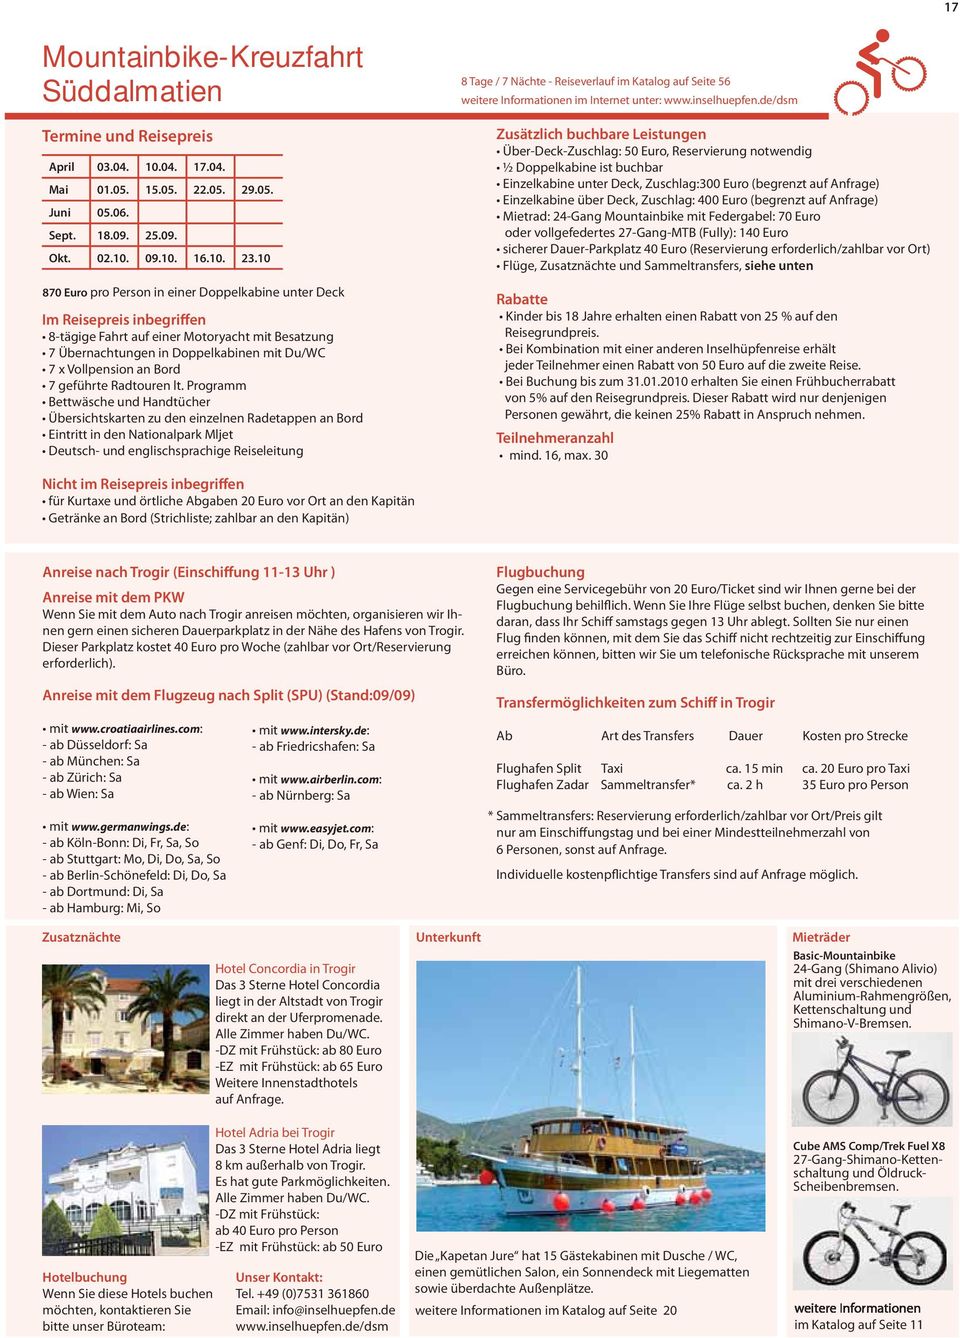 Programm Bettwäsche und Handtücher Übersichtskarten zu den einzelnen Radetappen an Bord Eintritt in den Nationalpark Mljet Deutsch- und englischsprachige Reiseleitung 8 Tage / 7 Nächte - Reiseverlauf